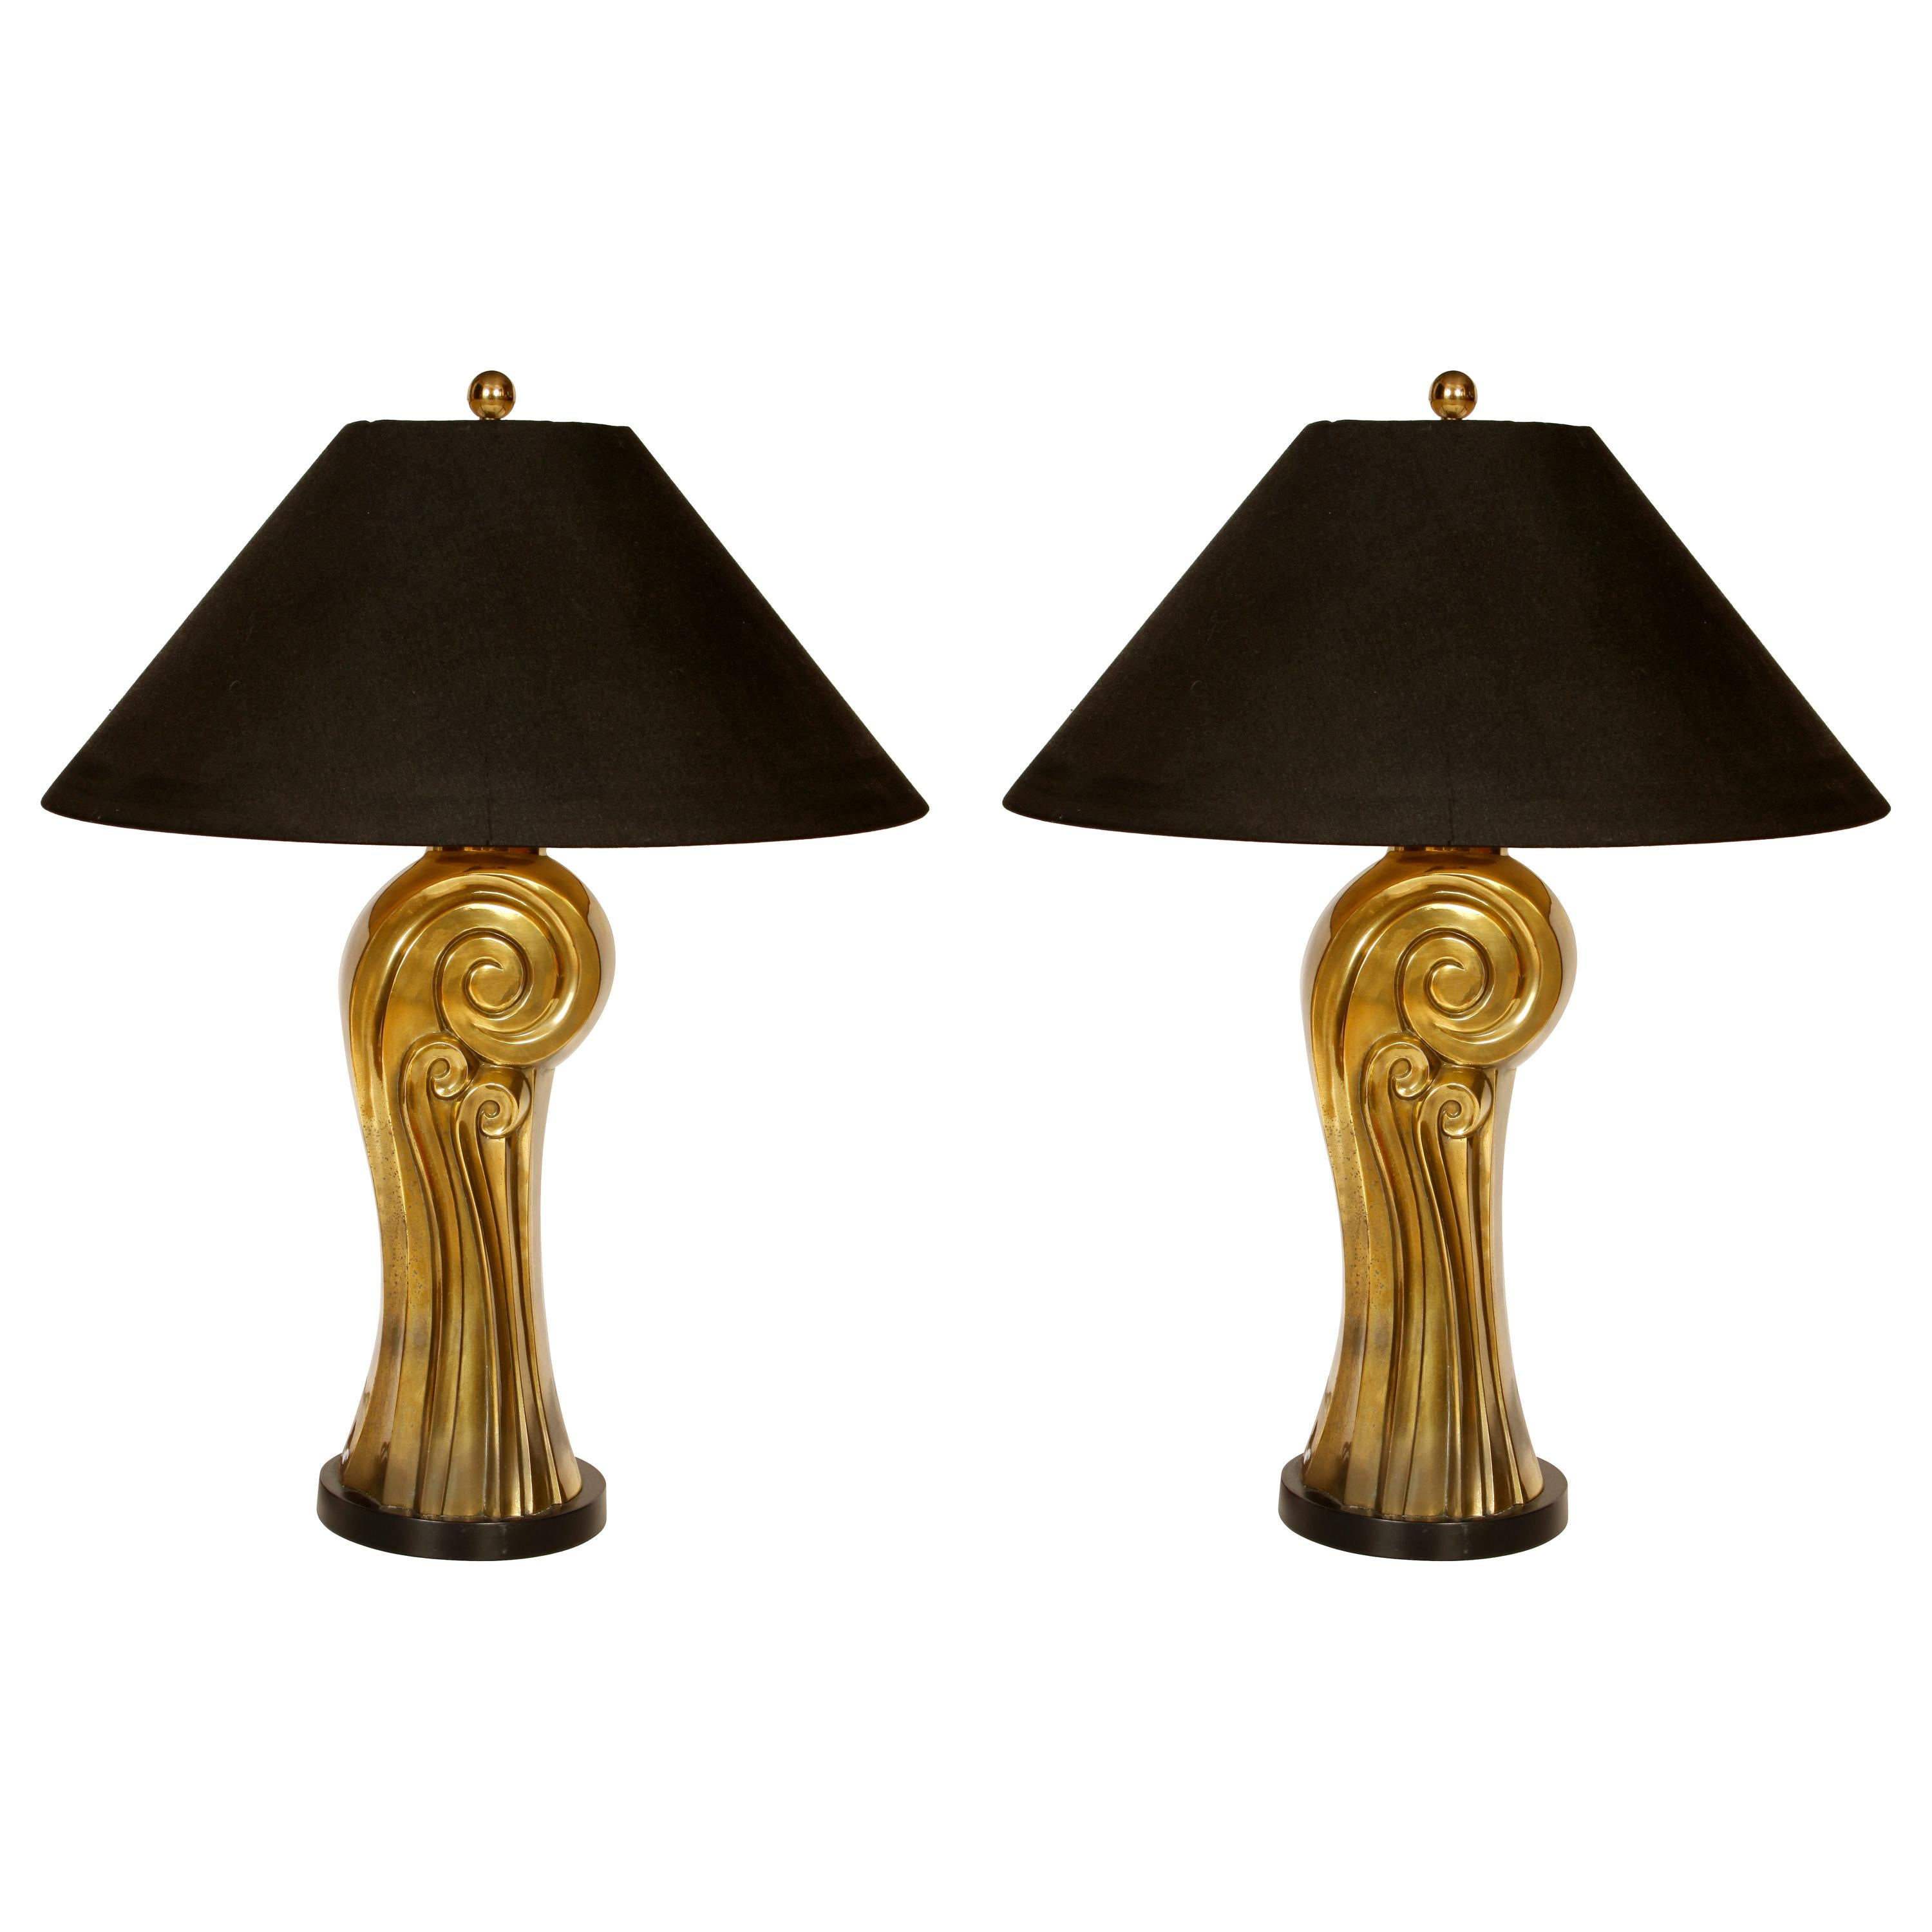 Pair of Vintage Midcentury Swirl Lamps